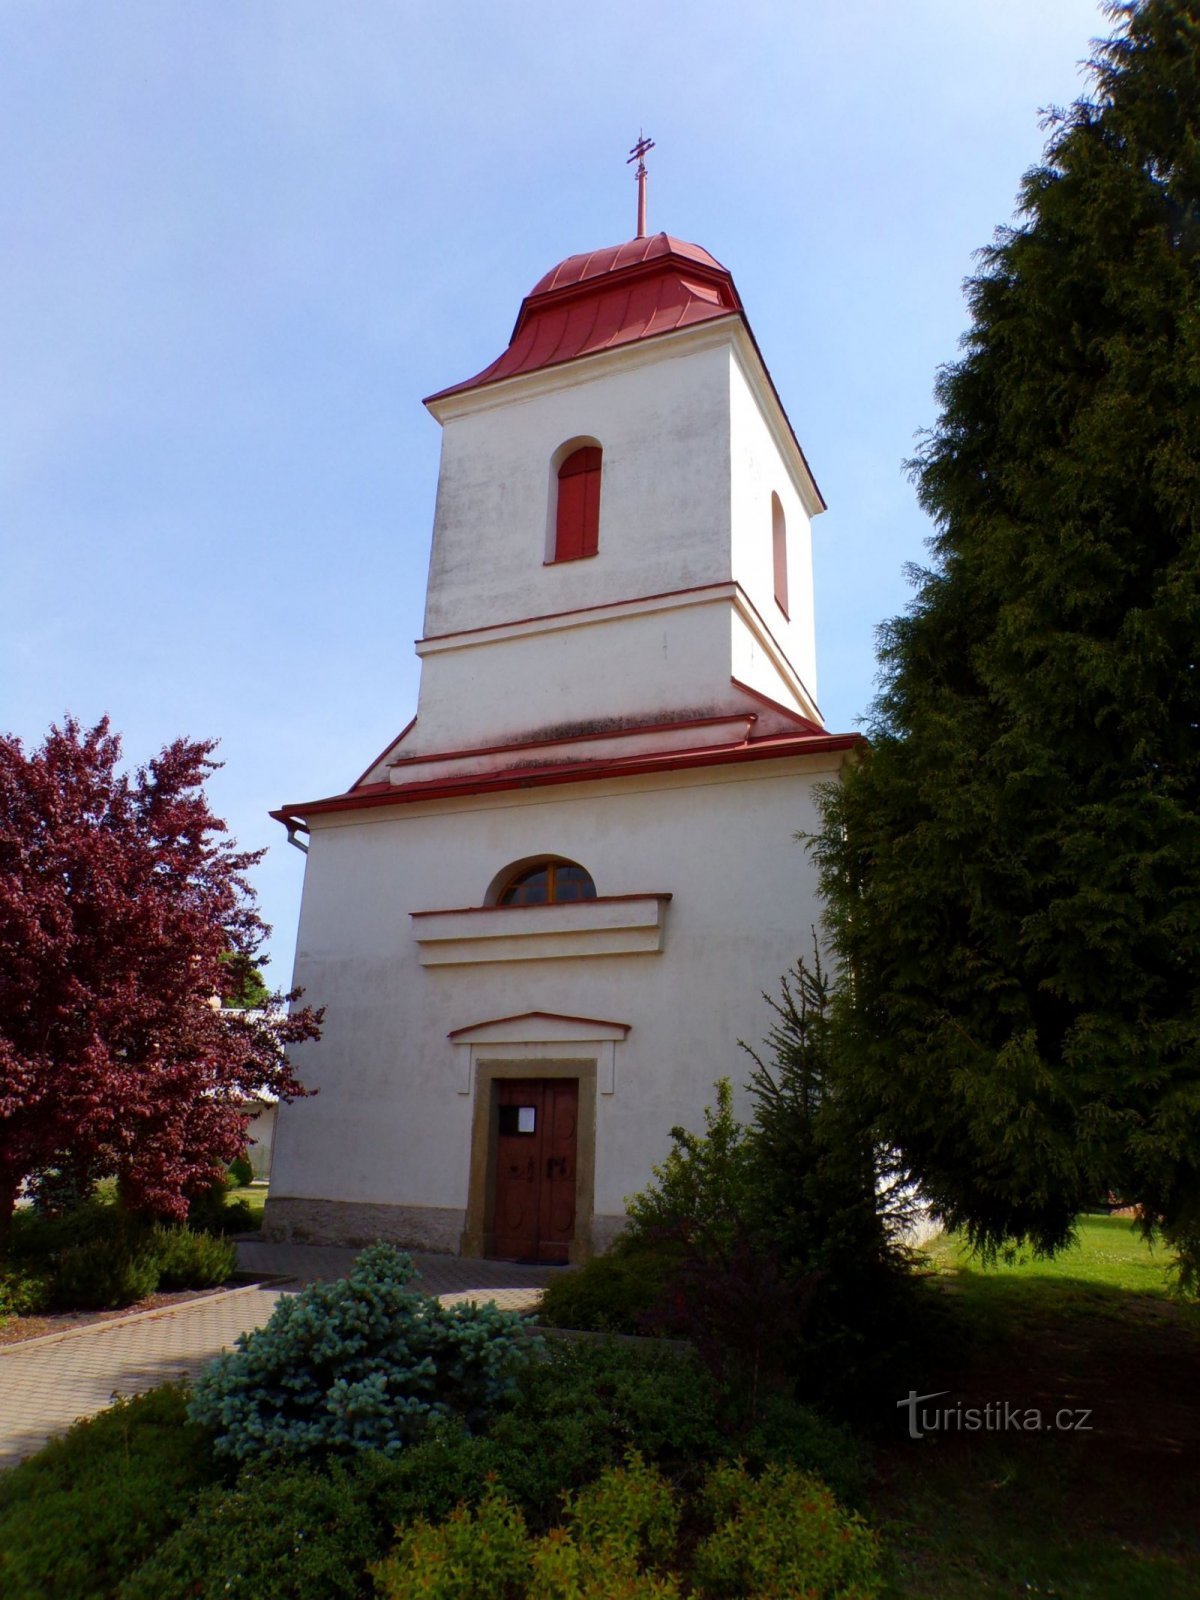 Церковь св. Иоанн Креститель (Альбрехтице-над-Орлицей, 20.5.2022)